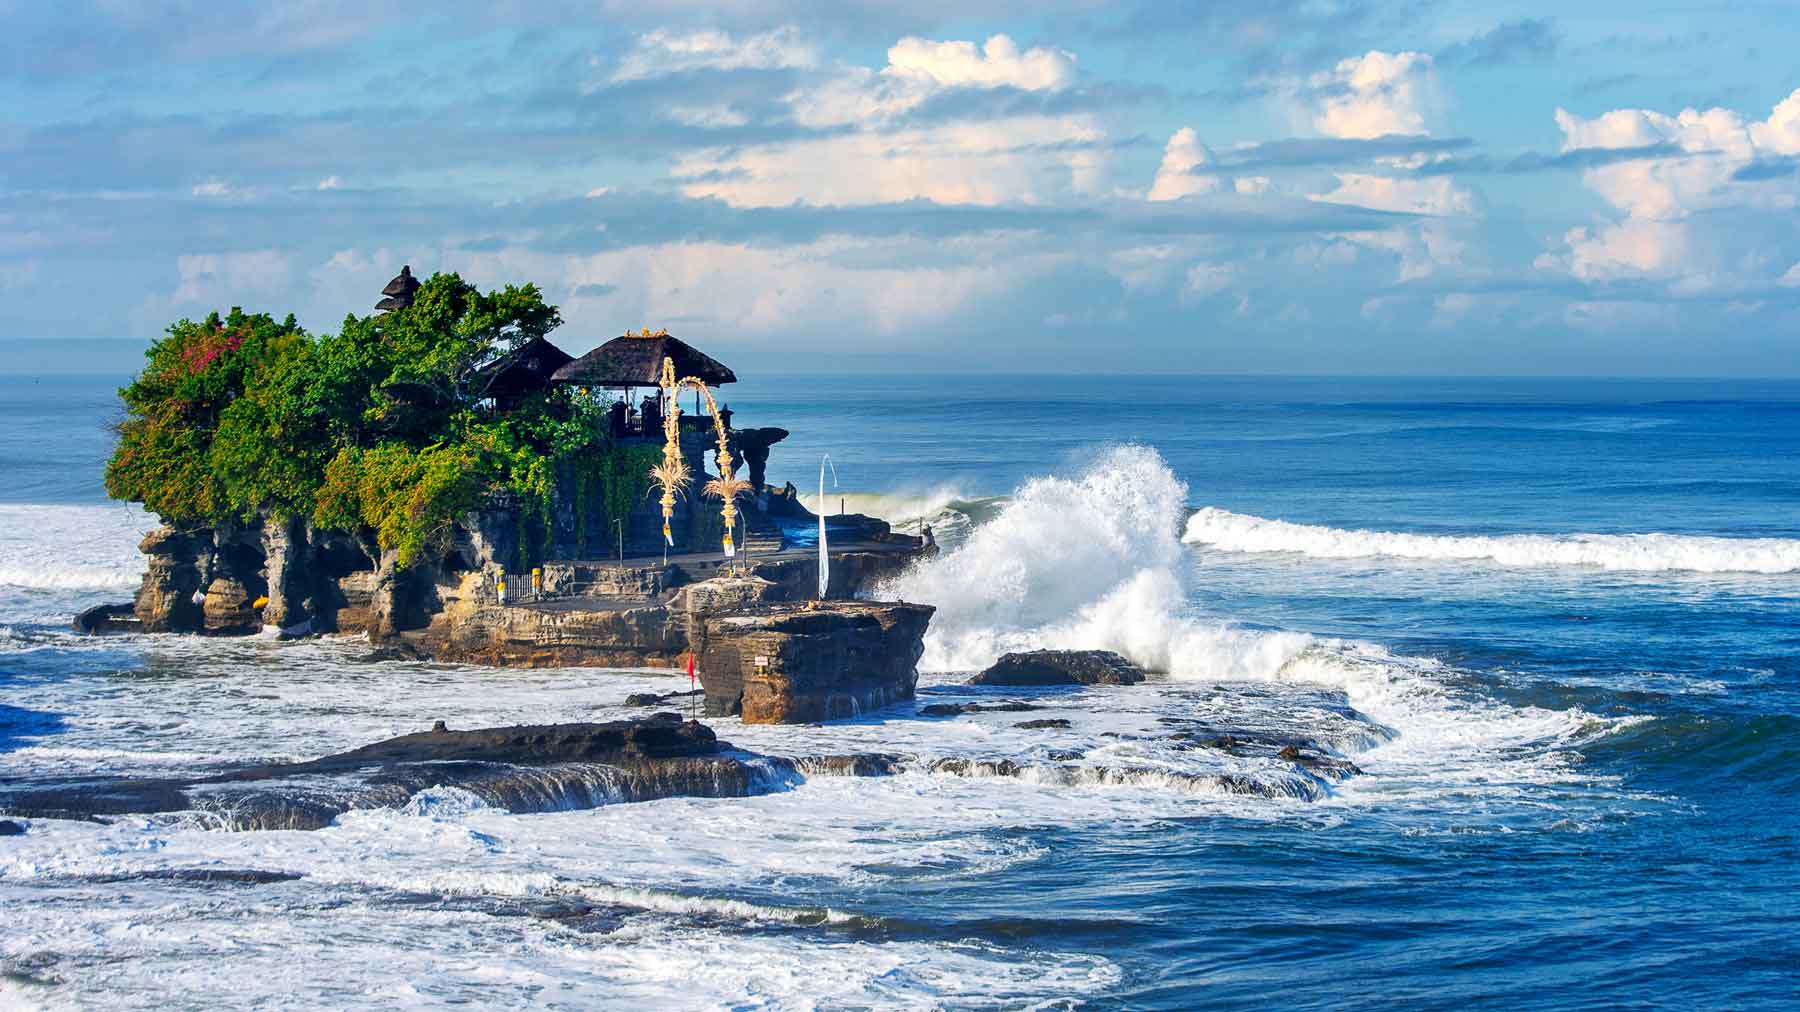 Wisata Favorit di Bali: 10 Tempat Wisata di Bali yang Wajib Dikunjungi